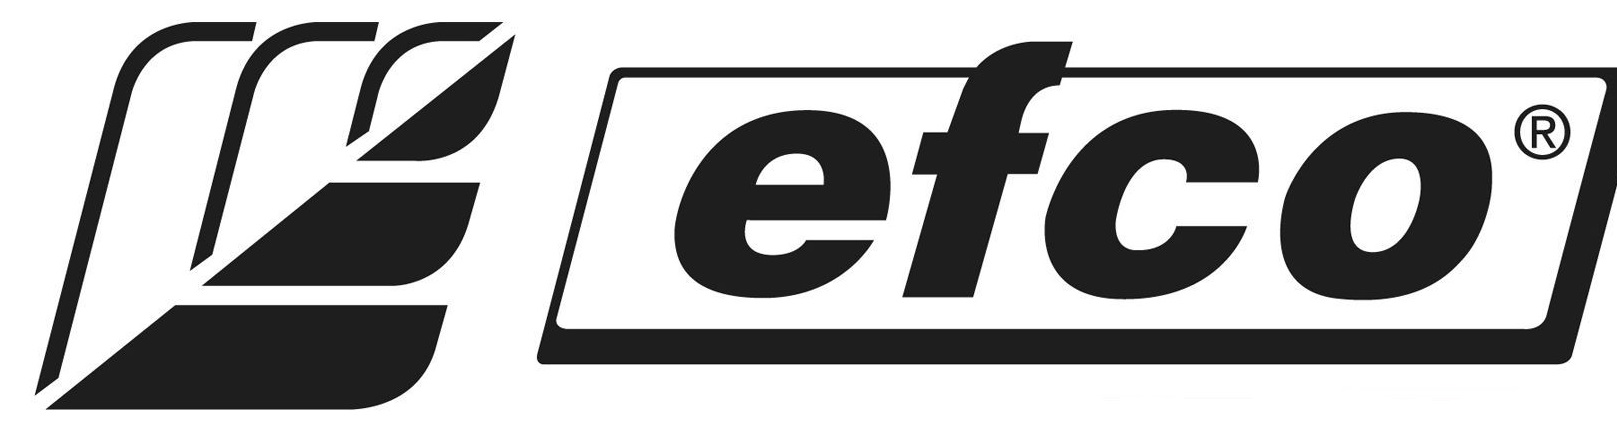 Логотип бренда Efco